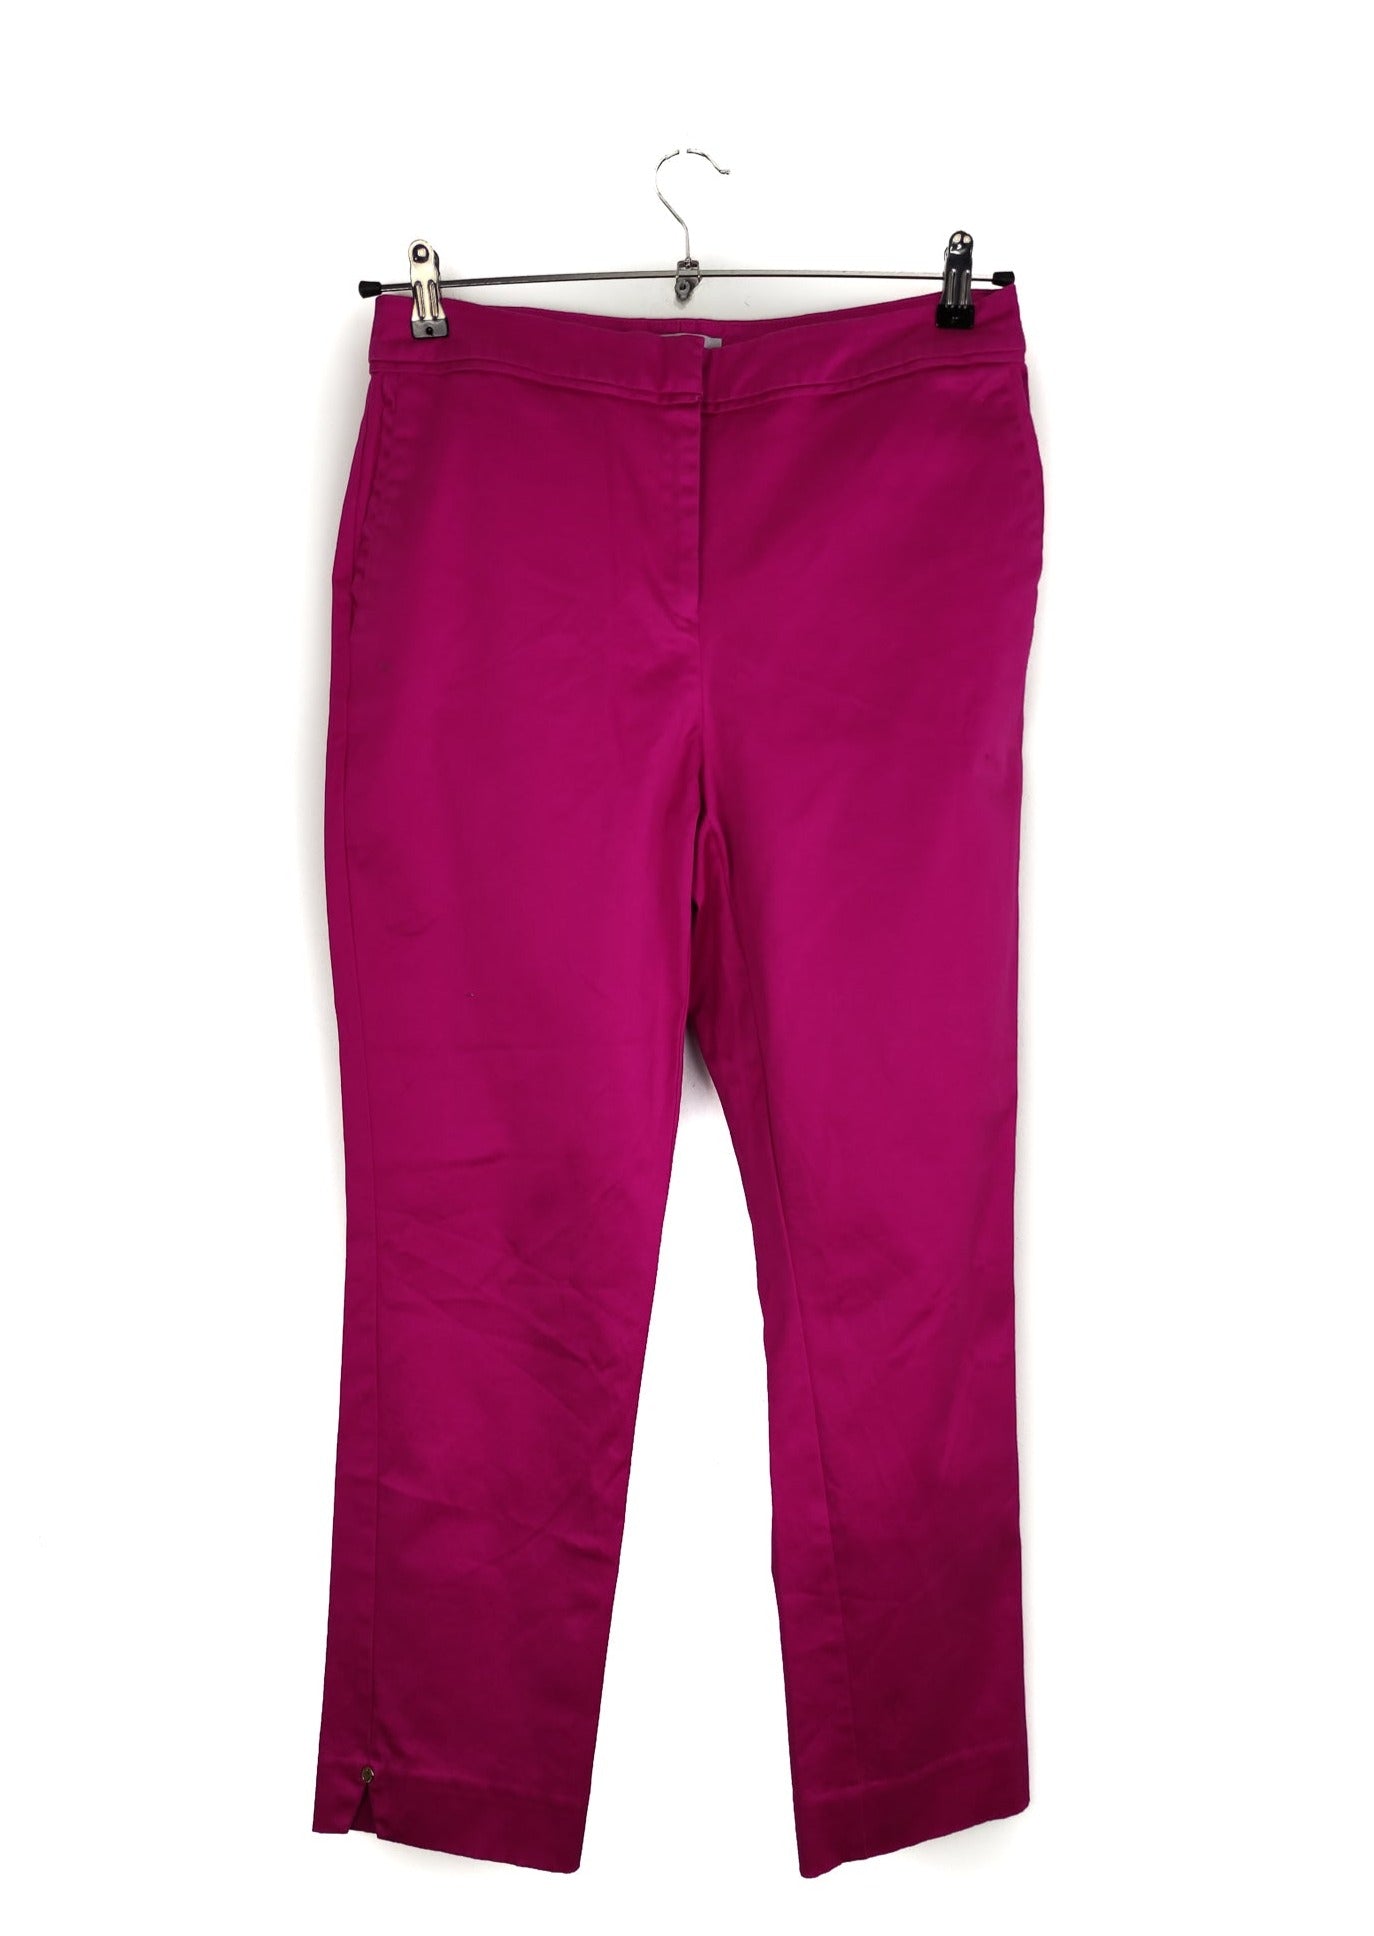 Γυναικείο Παντελόνι M&S σε Φούξια Χρώμα (Large)